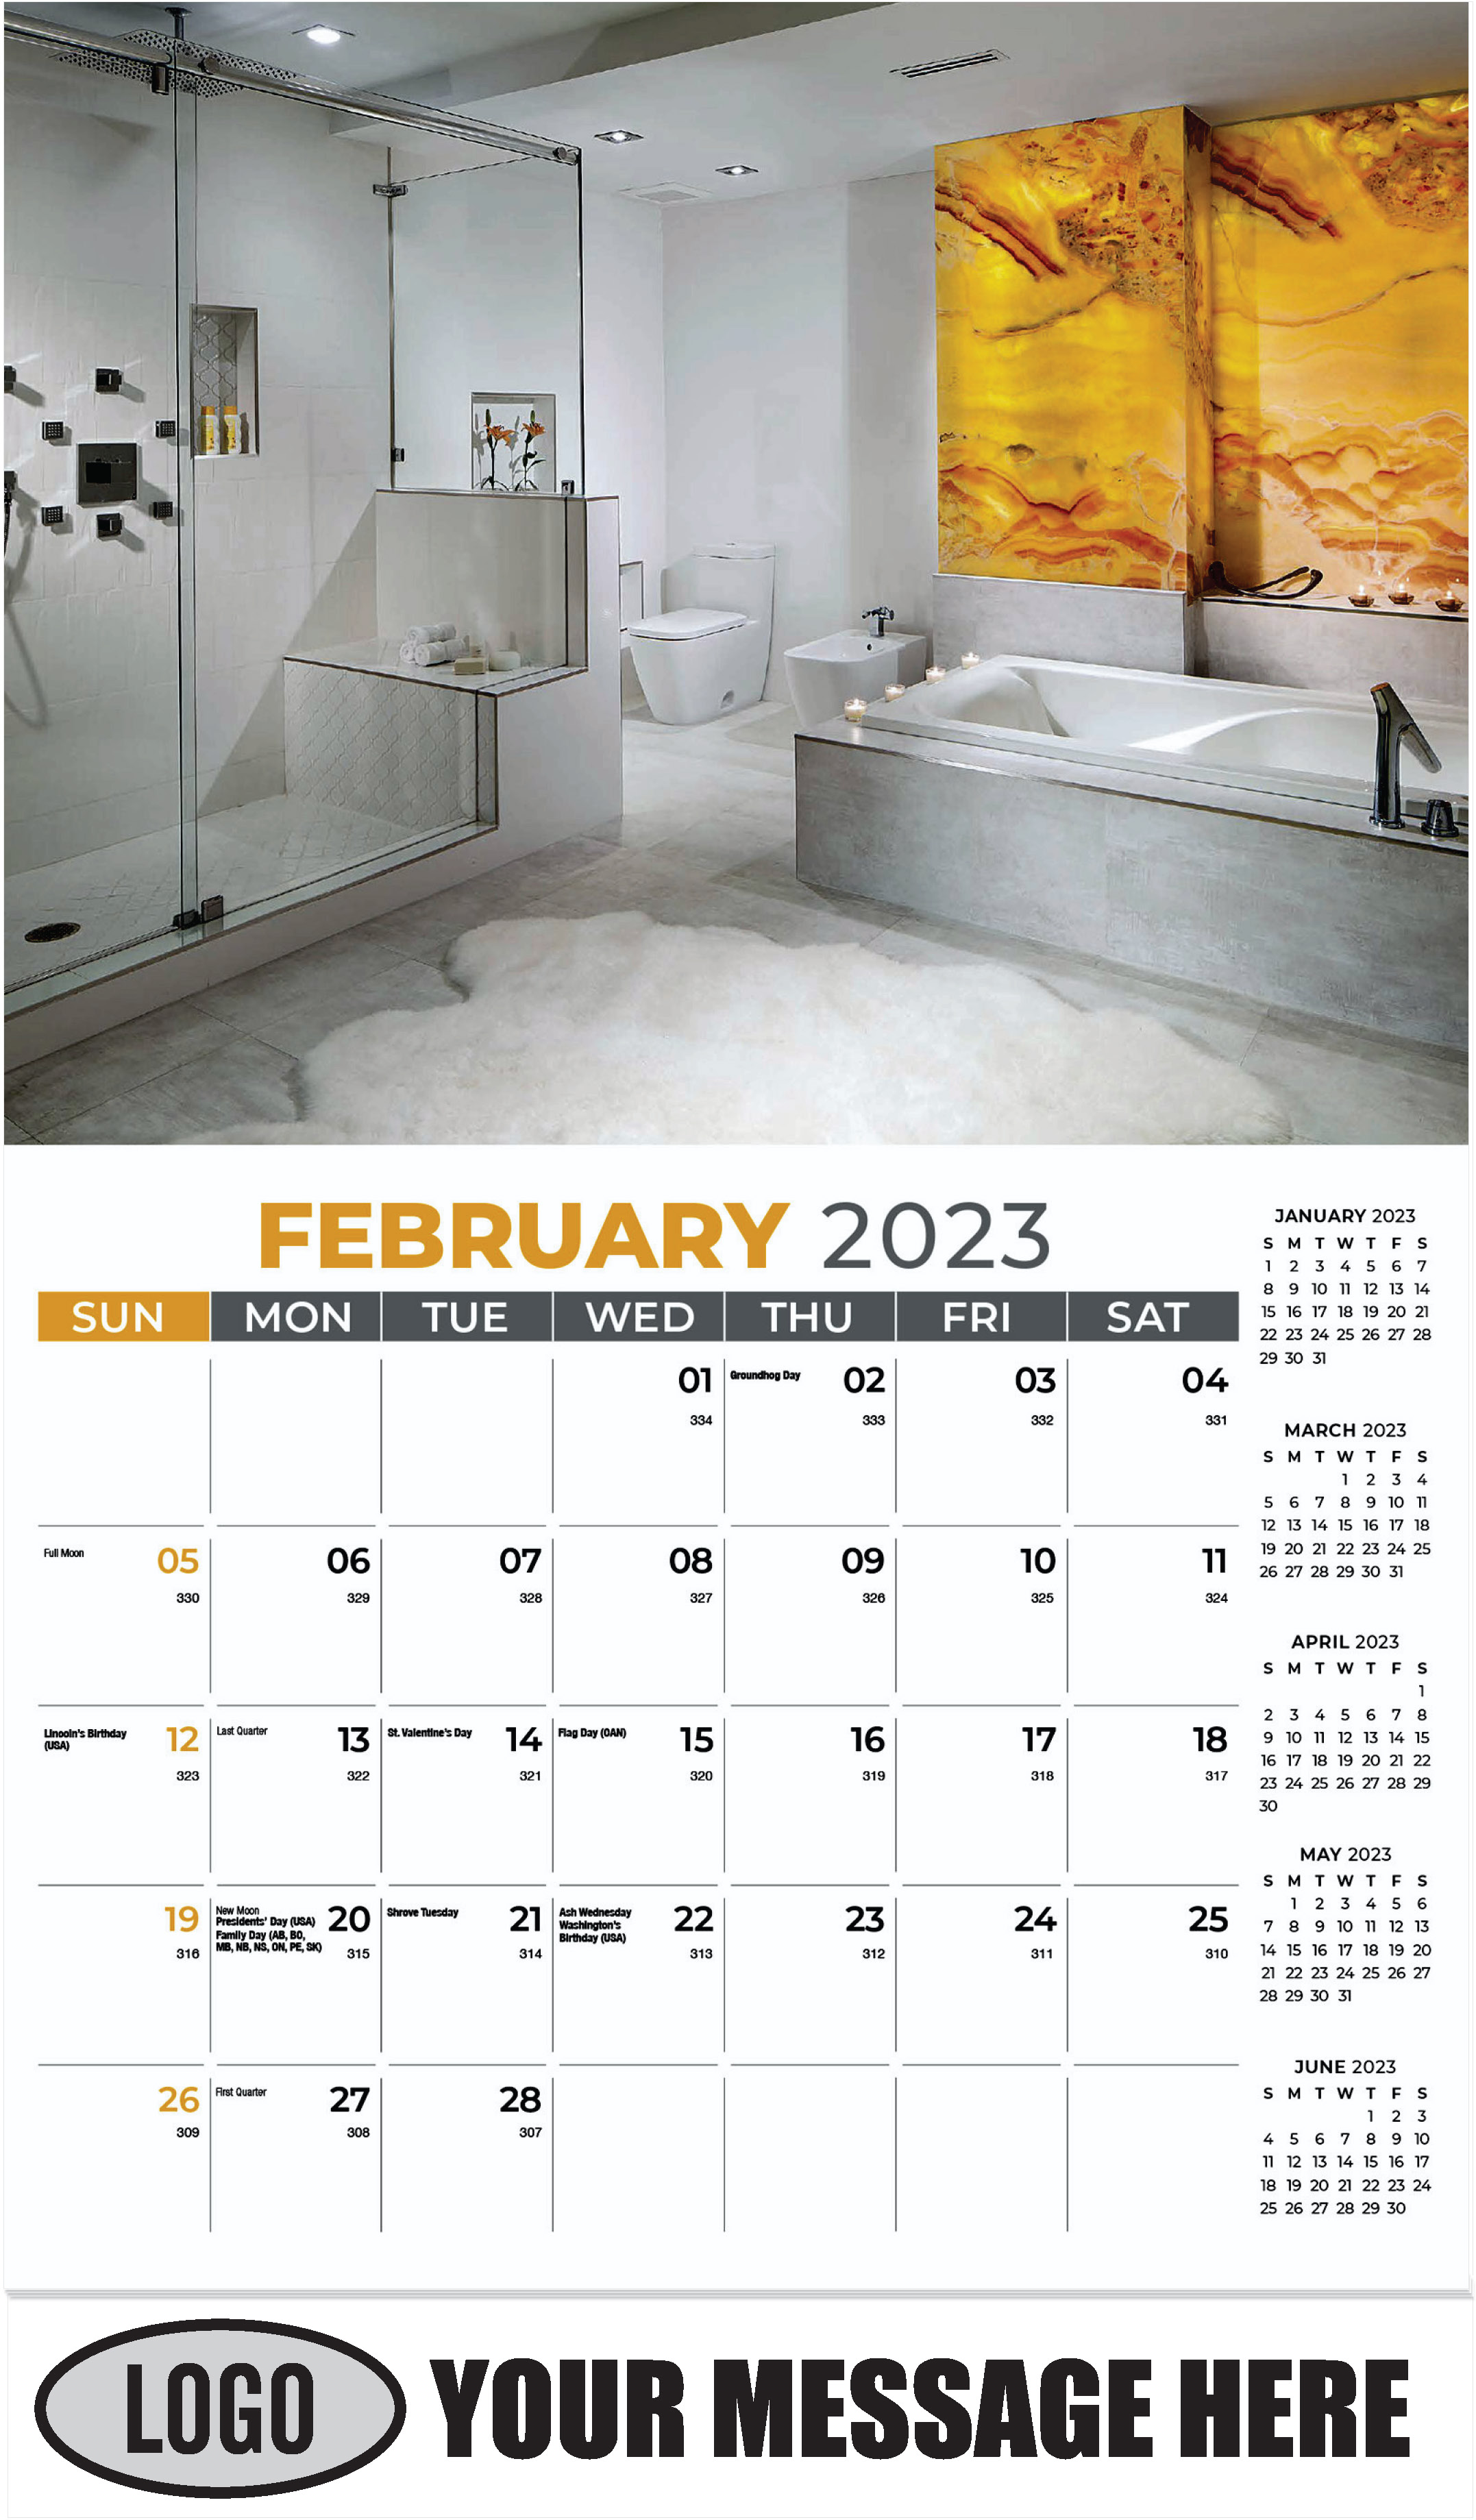 February - Décor & Design 2023 Promotional Calendar